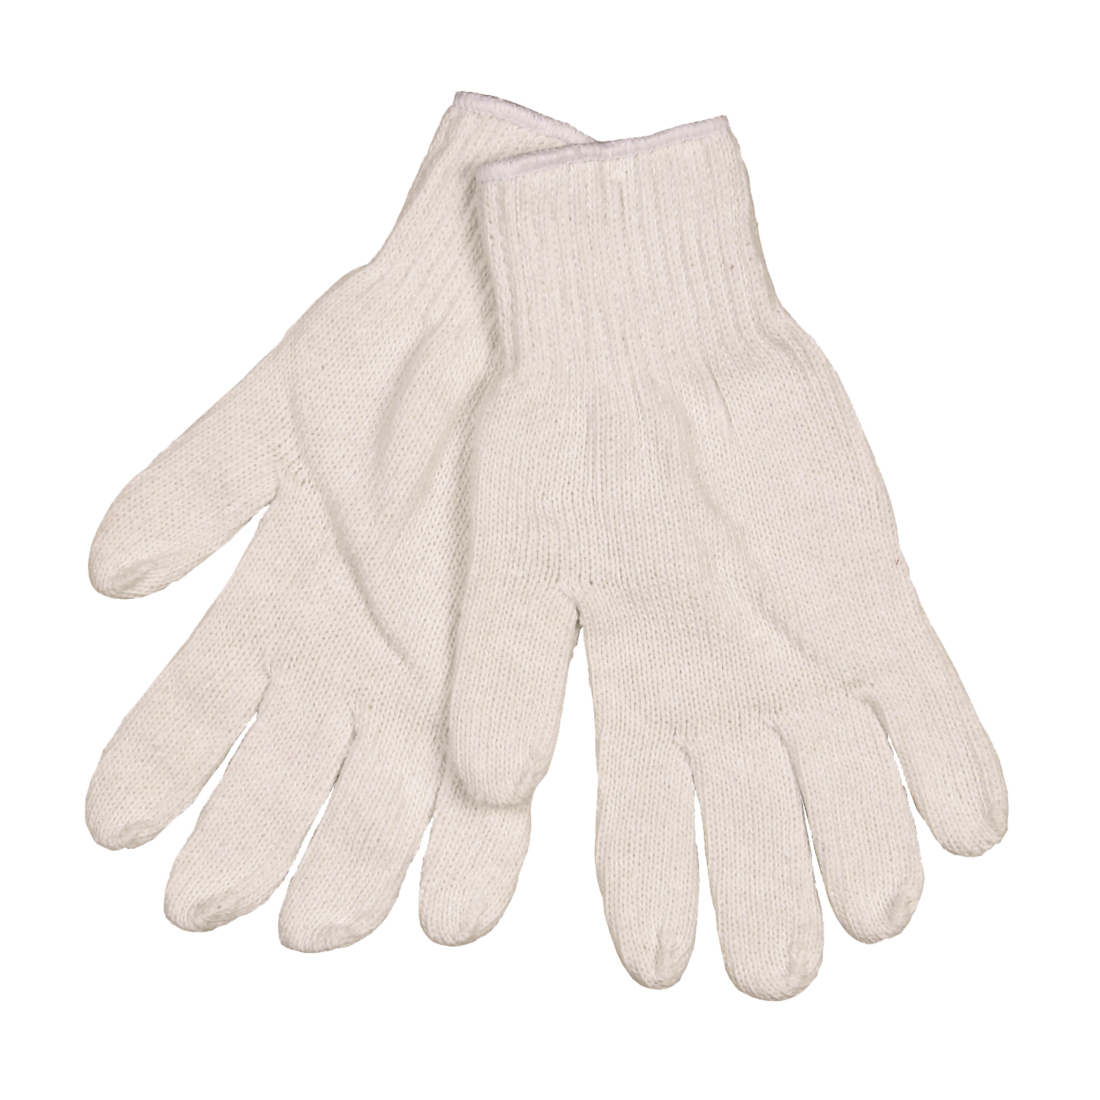 Handske i 100 % polyester, hvid uden plastdotter, 12 par | X-large